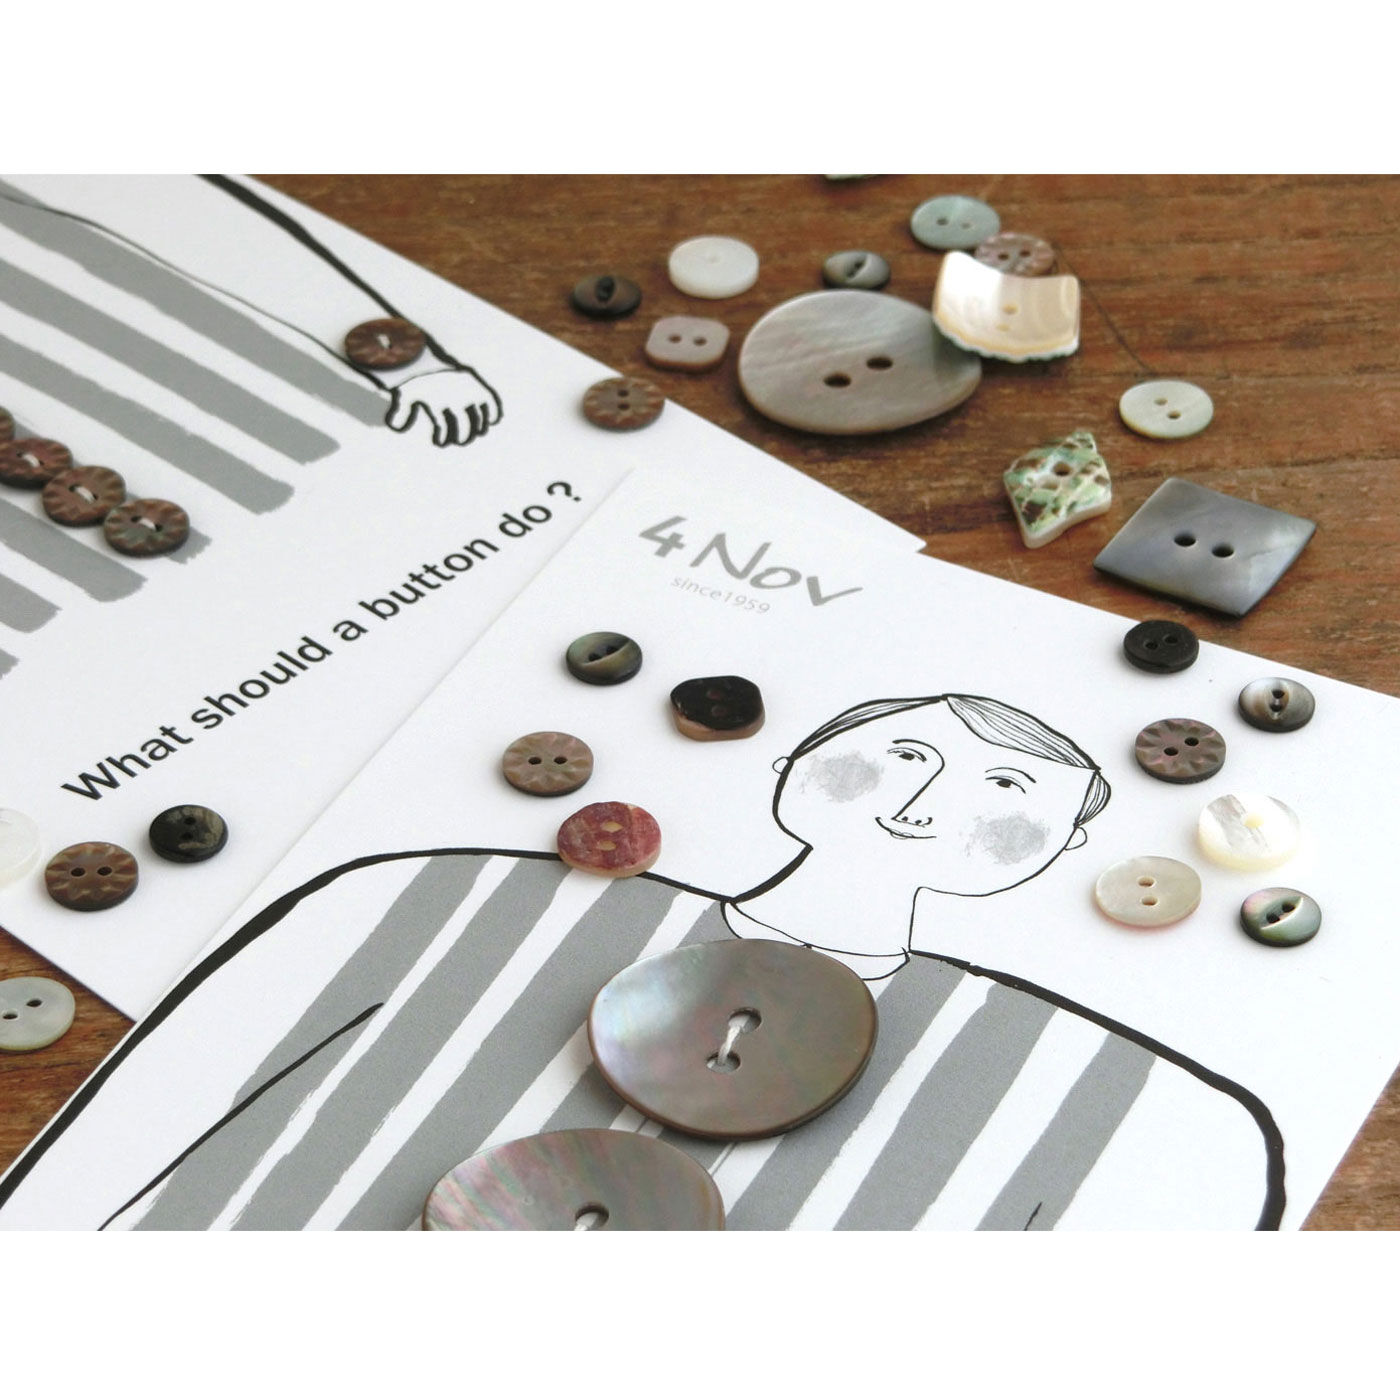 フェリシモの雑貨 Kraso|4Nov 奈良の貝ボタン職人が作った貝殻ピアス〈茶蝶貝 筒〉|【奈良の贈りものプロジェクト】贈る方にも、贈られる方にも感動を。そんな贈りものを、奈良でつくりたい……。奈良の地がはぐくむ、穏やかで簡素、それでいて洗練されたものをめざす「奈良の贈りものプロジェクト」から生まれた、宝物のような愛らしい貝ボタンたち（写真）も、フーズノートで販売中です。※この写真の台紙は、ボタン用の大きなサイズのものです。